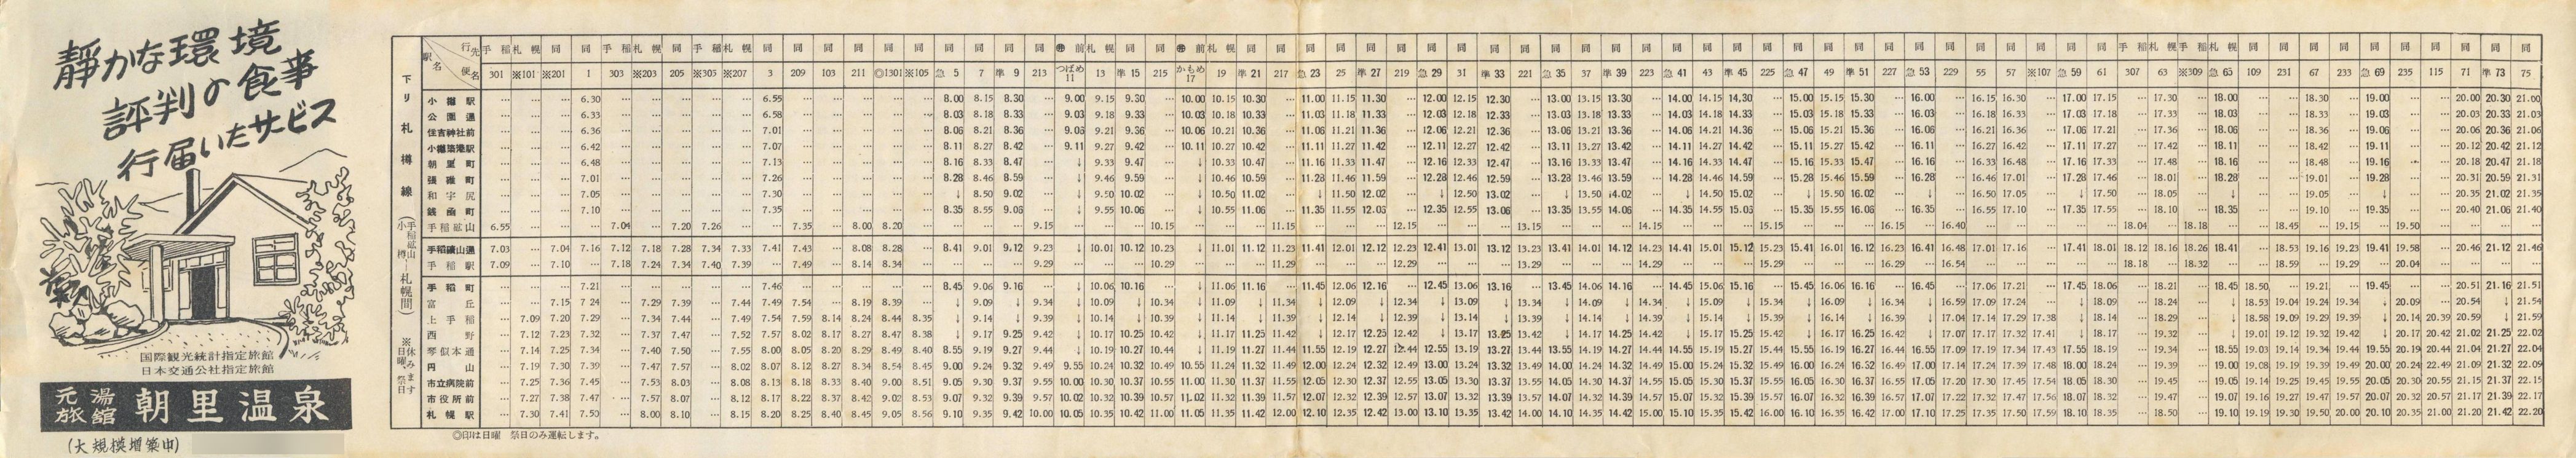 1957-06-01改正_国鉄バス_札樽線時刻表裏面